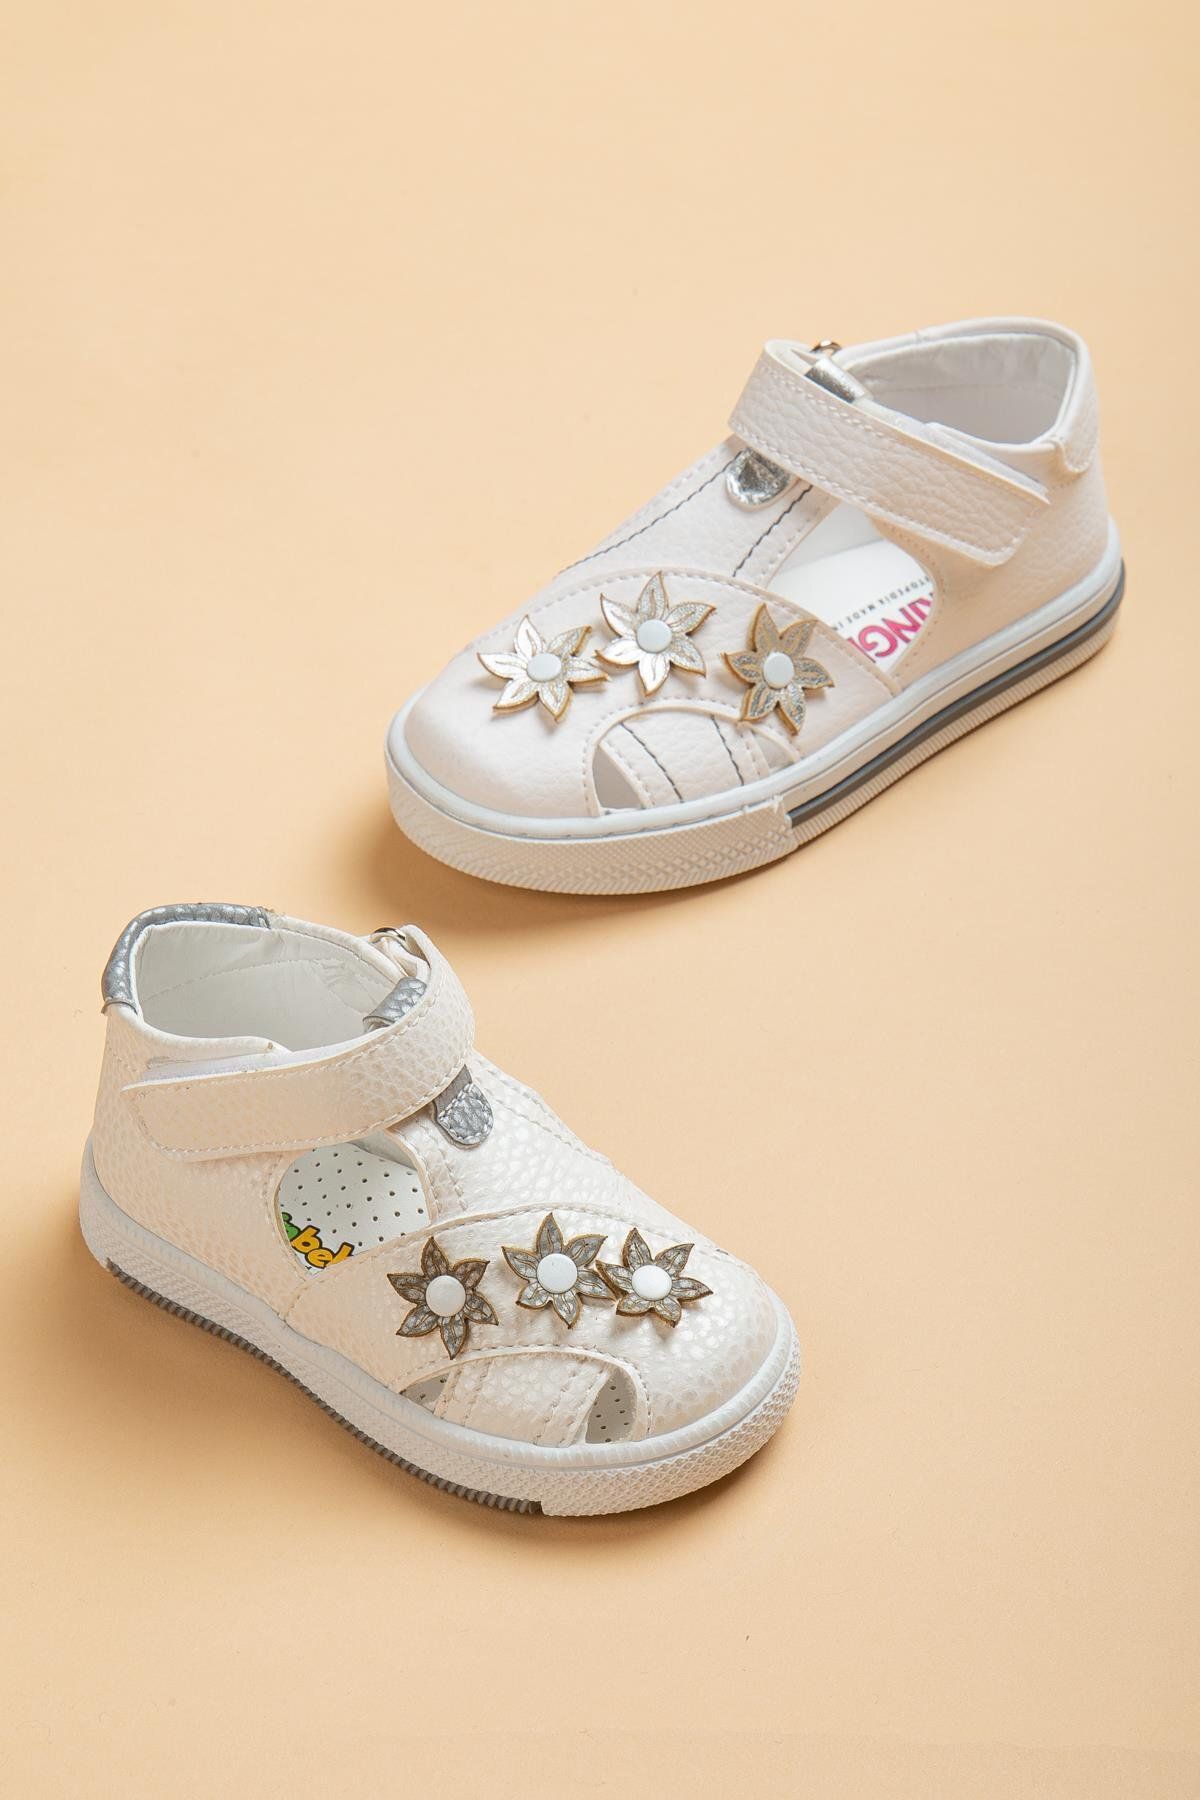 Dilimler Ayakkabı Şirinbebe Şiringenç Çiçekli Model Beyaz Kız Ilkadım Bebek Çocuk Ayakkabı Sandalet